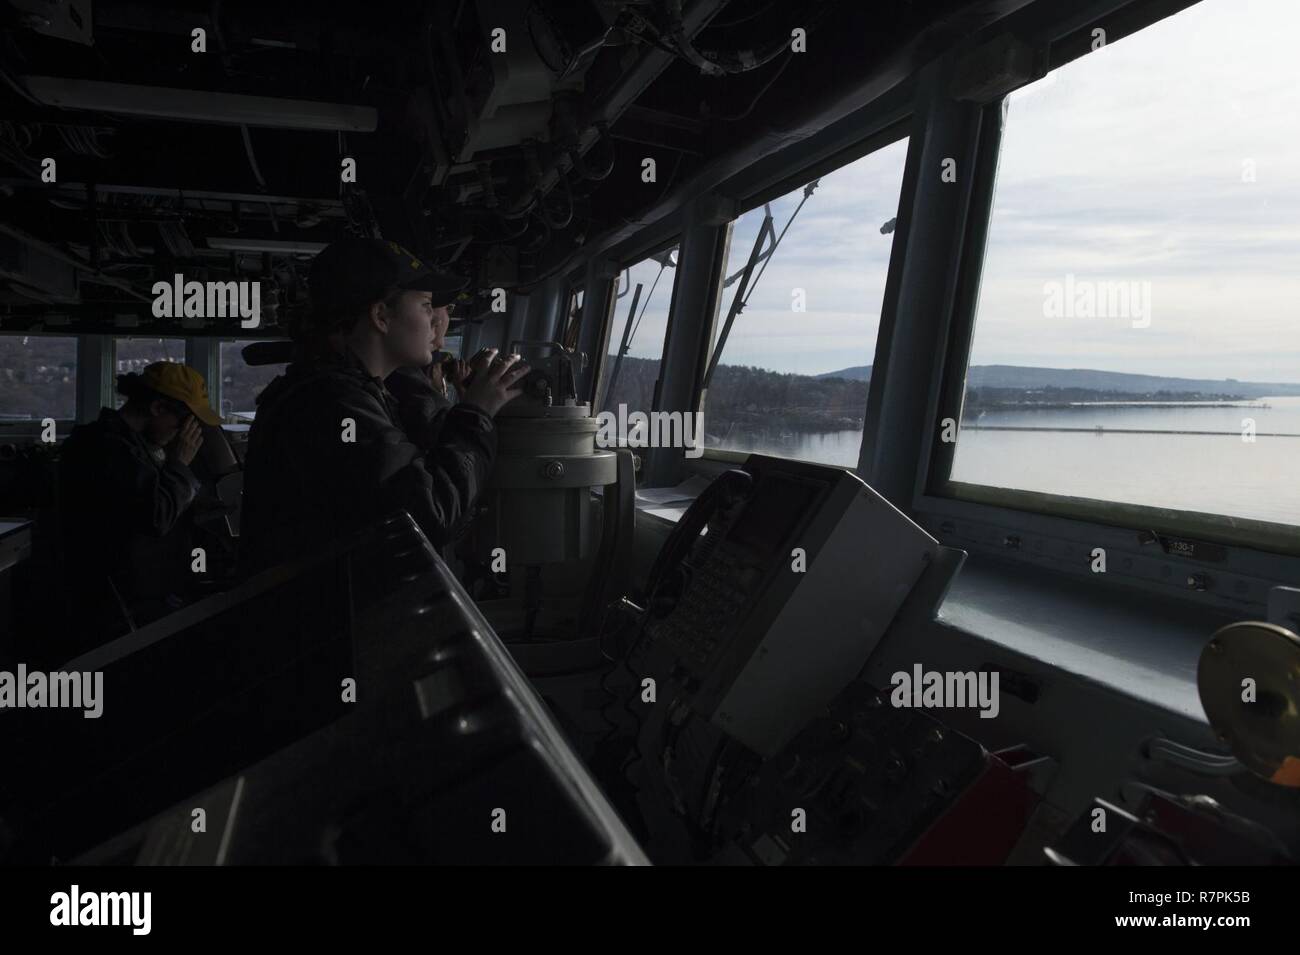 FASLANE, Escocia - (26 de marzo, 2017) - Ensign Rachel vender, conning officer, novillos USS Carney (DDG 64) en marcha de Faslane, Escocia, el 26 de marzo de 2017. Carney, un Arleigh Burke clase destructor de misiles guiados, desplegadas a Rota, España, está realizando su tercera patrulla en los EE.UU. 6ª Flota de la zona de operaciones en apoyo de los intereses de seguridad nacional de EE.UU. en Europa. Foto de stock